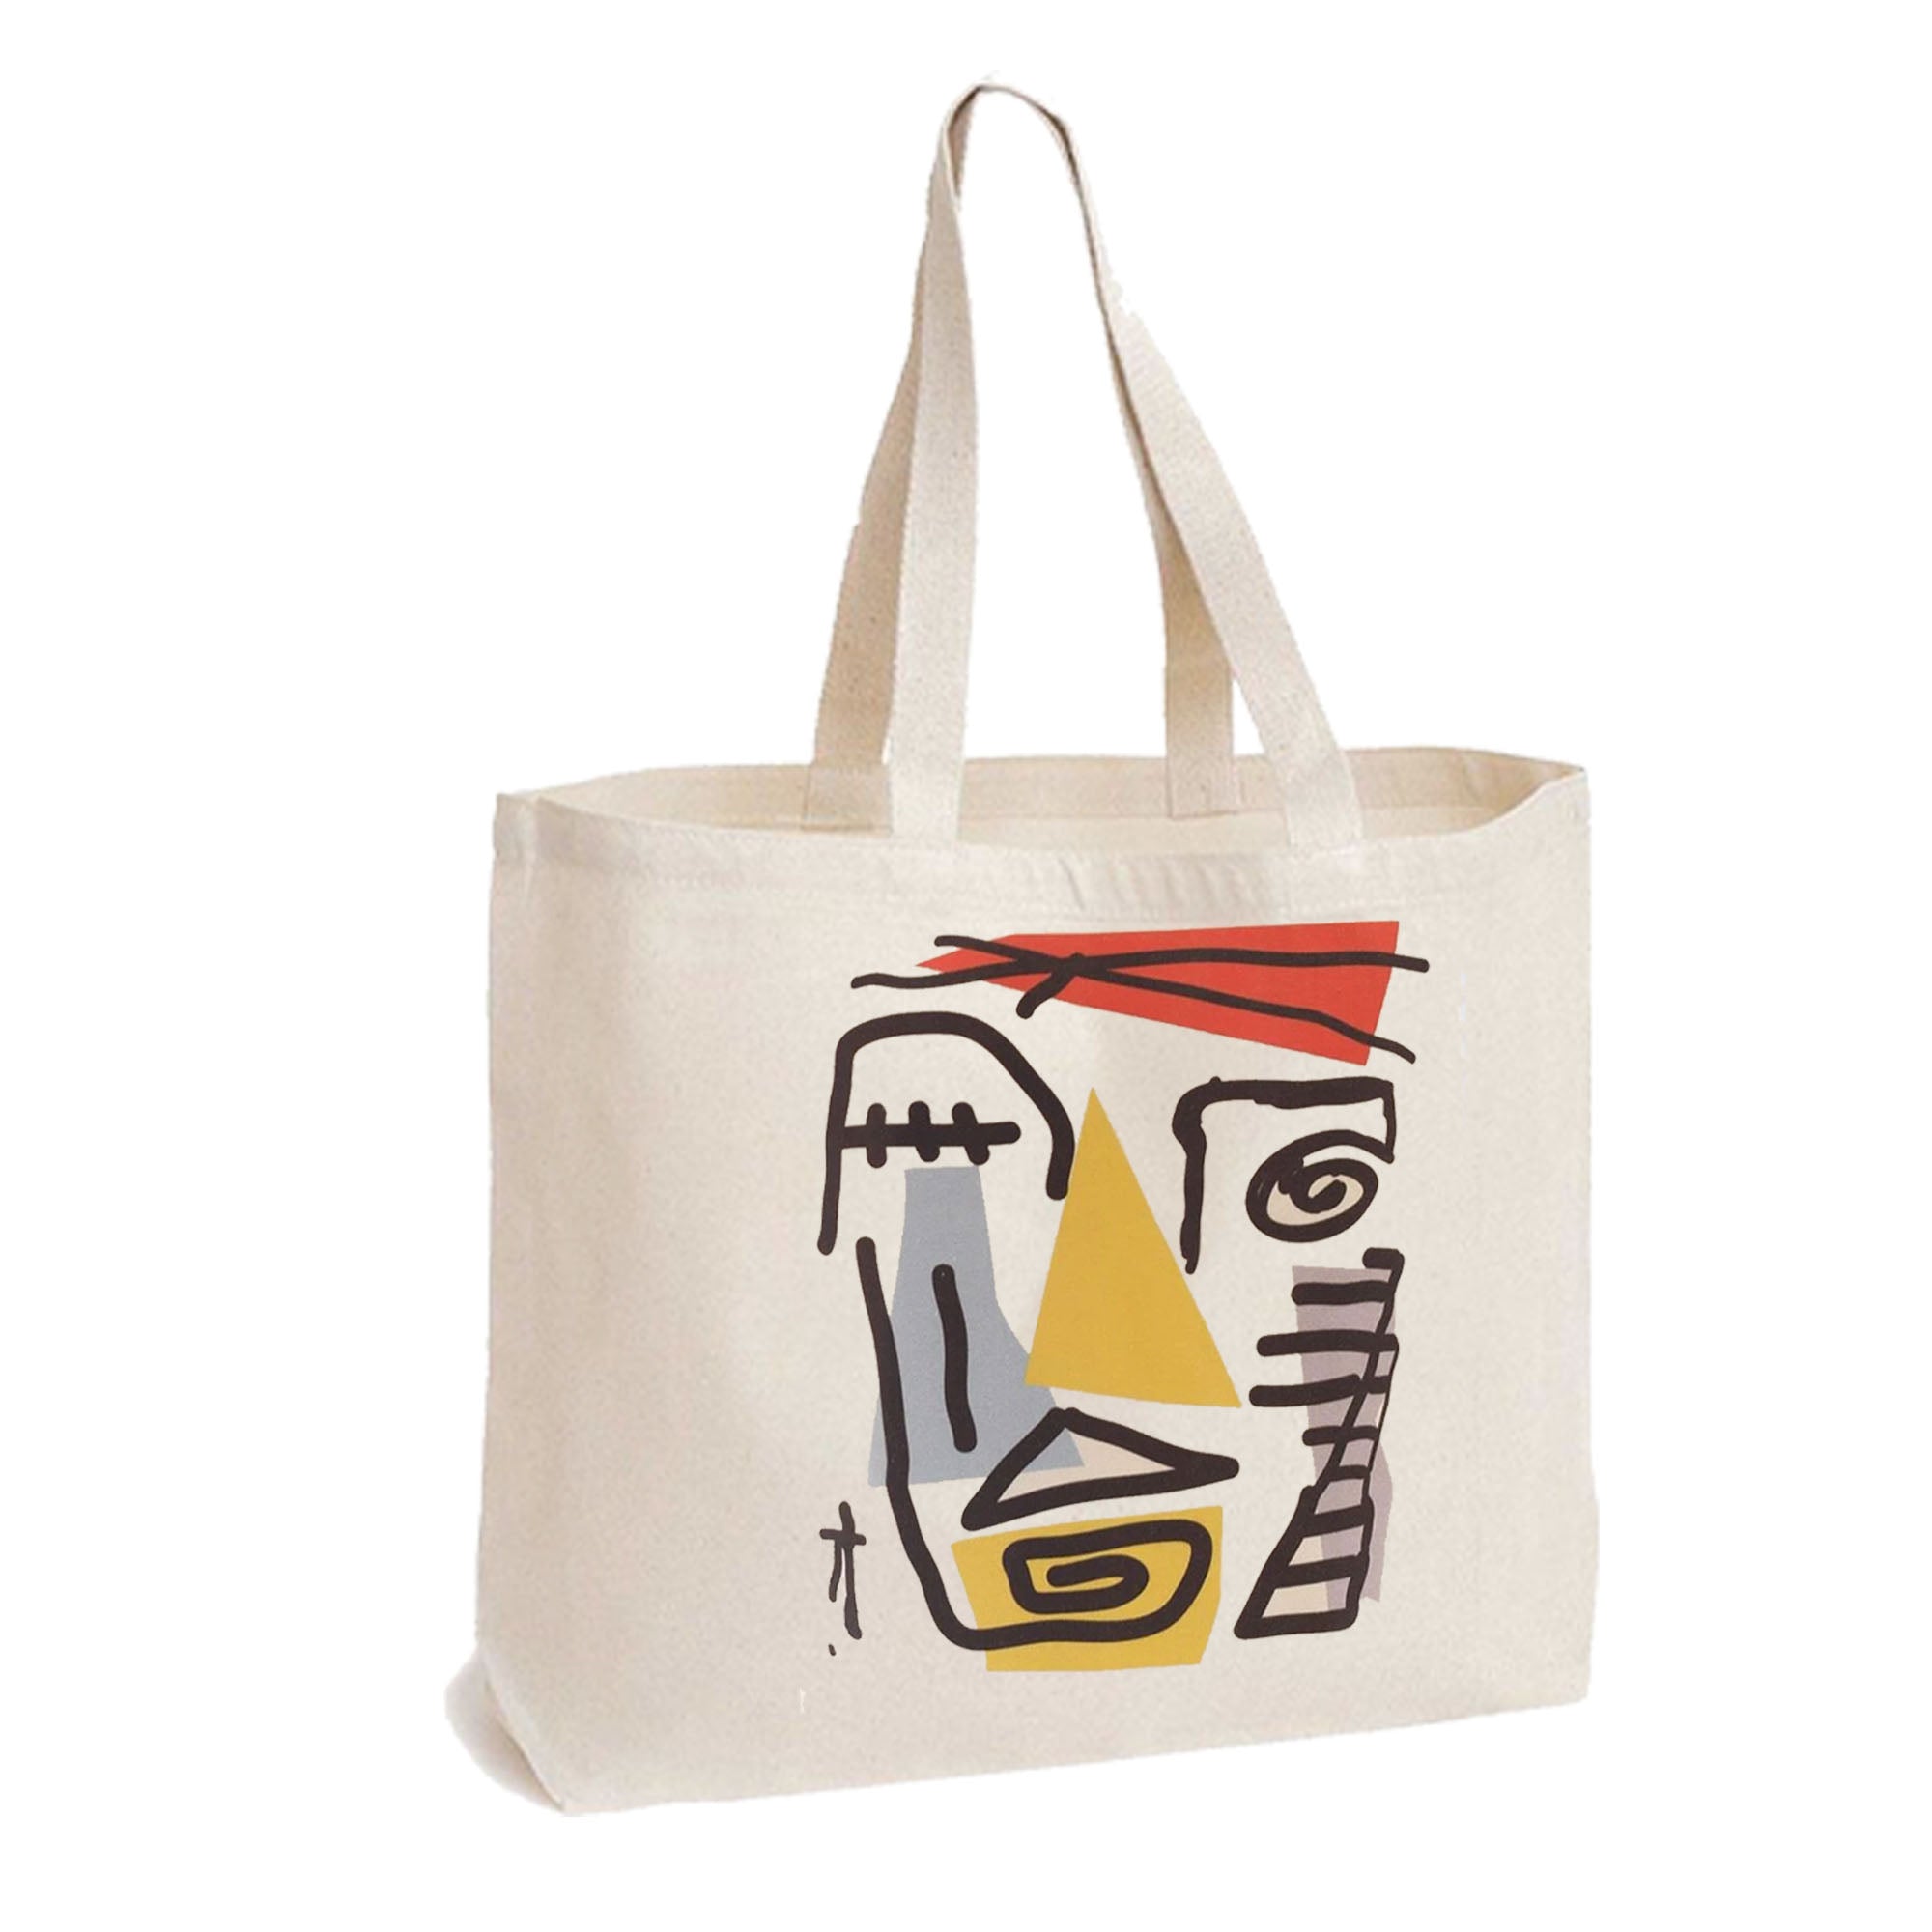 Umweltfreundliche wiederverwendbare Einkaufstasche aus Segeltuch – Design im Picasso-Stil